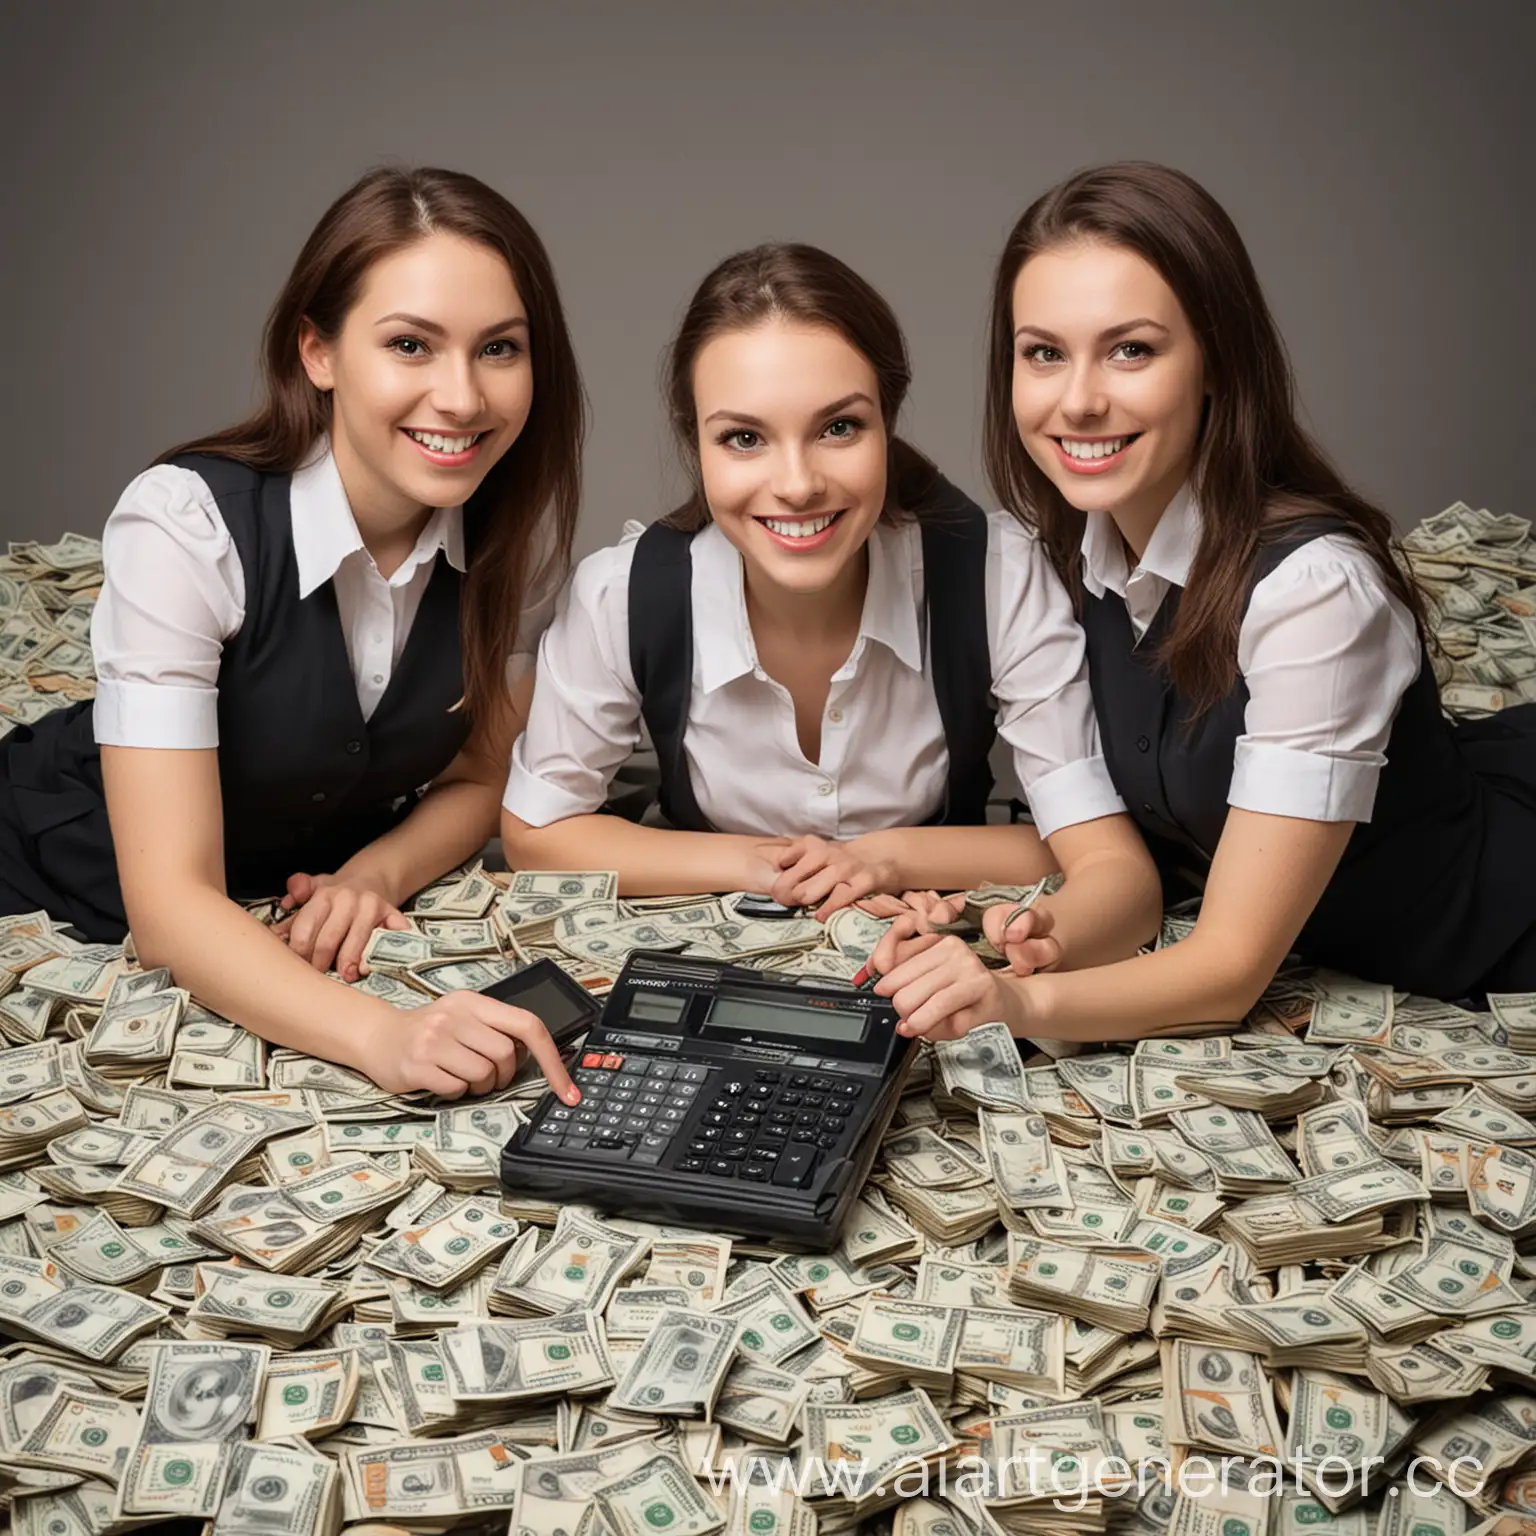 Отдел из бухгалтерии, состоящий из женщин с калькуляторами сидит на пачках денег и улыбается